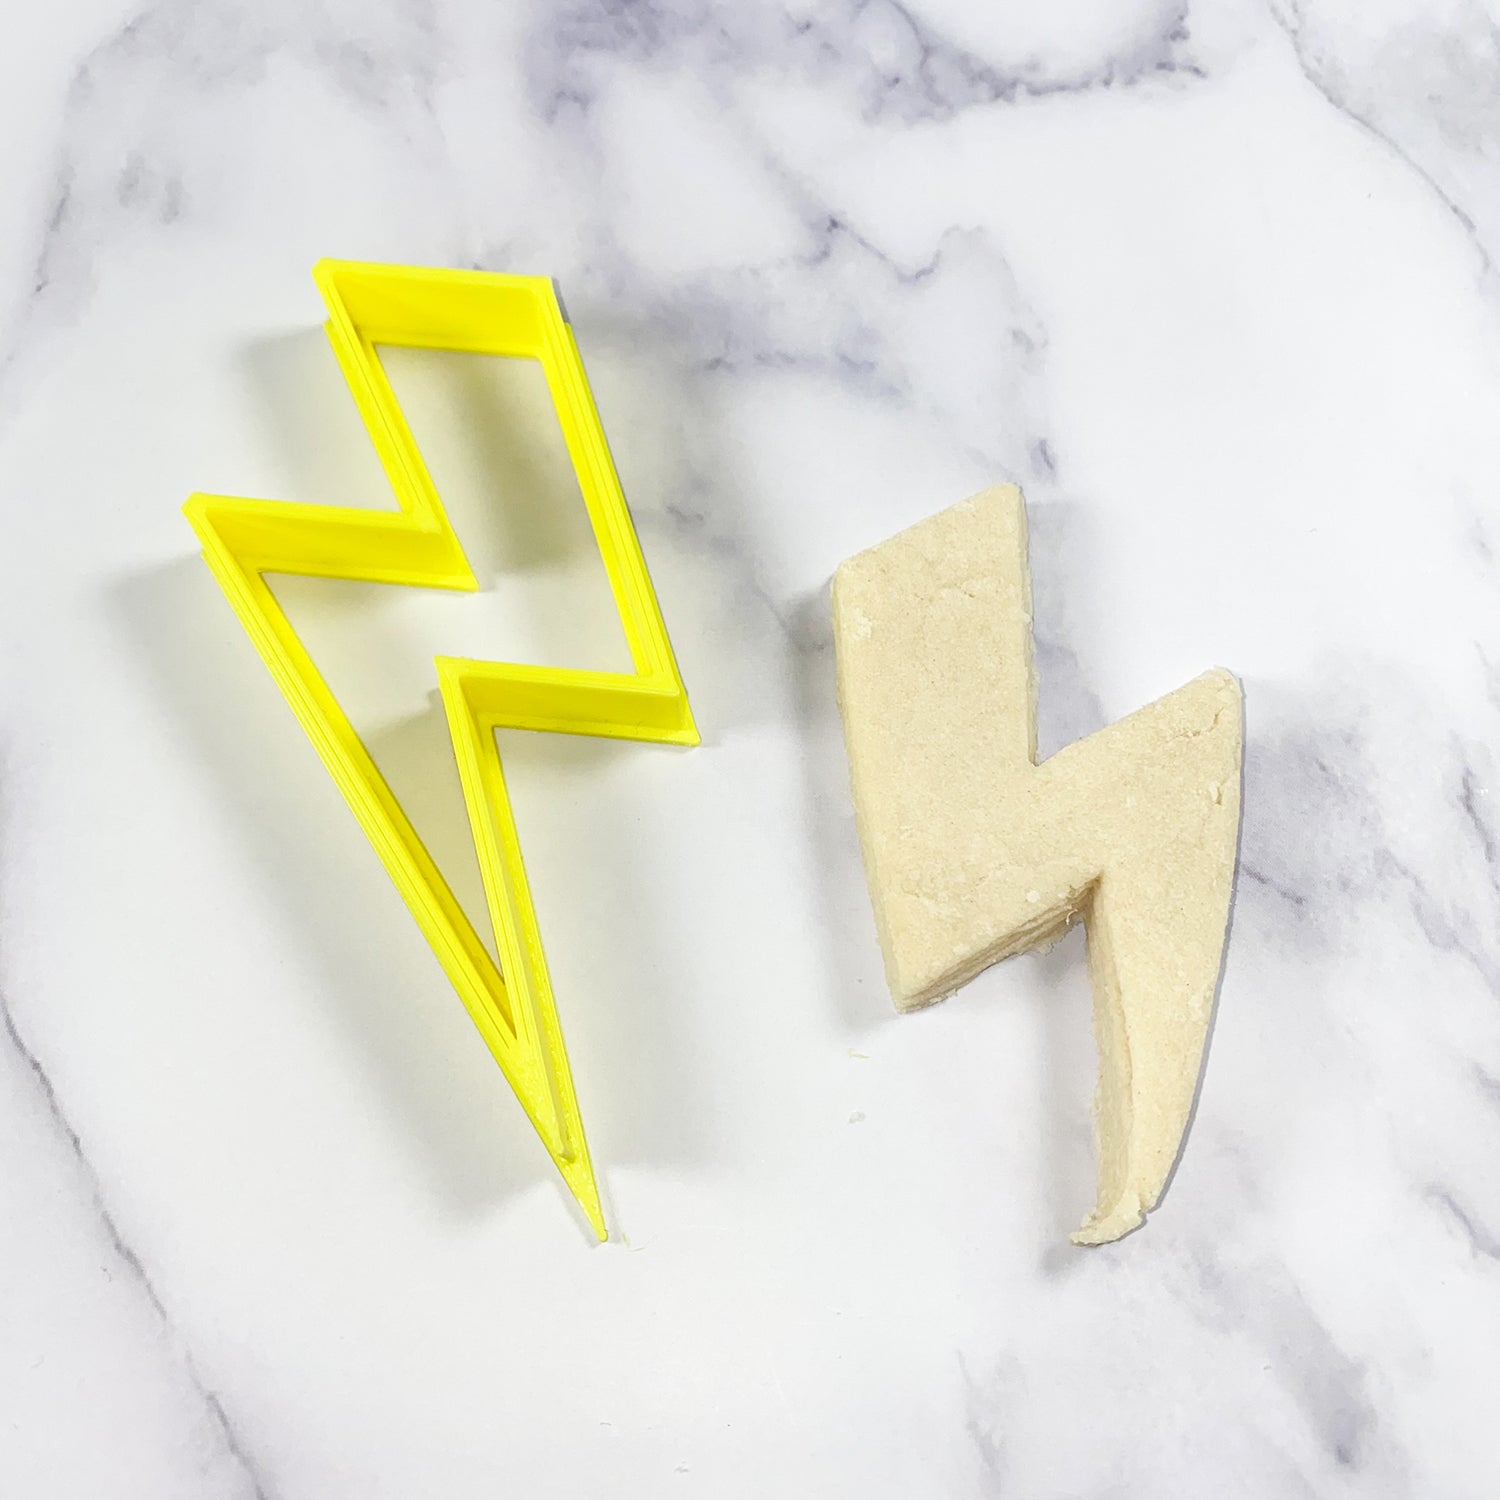 Lightning bolt outline cookie cutter - USA Made dough cut-out